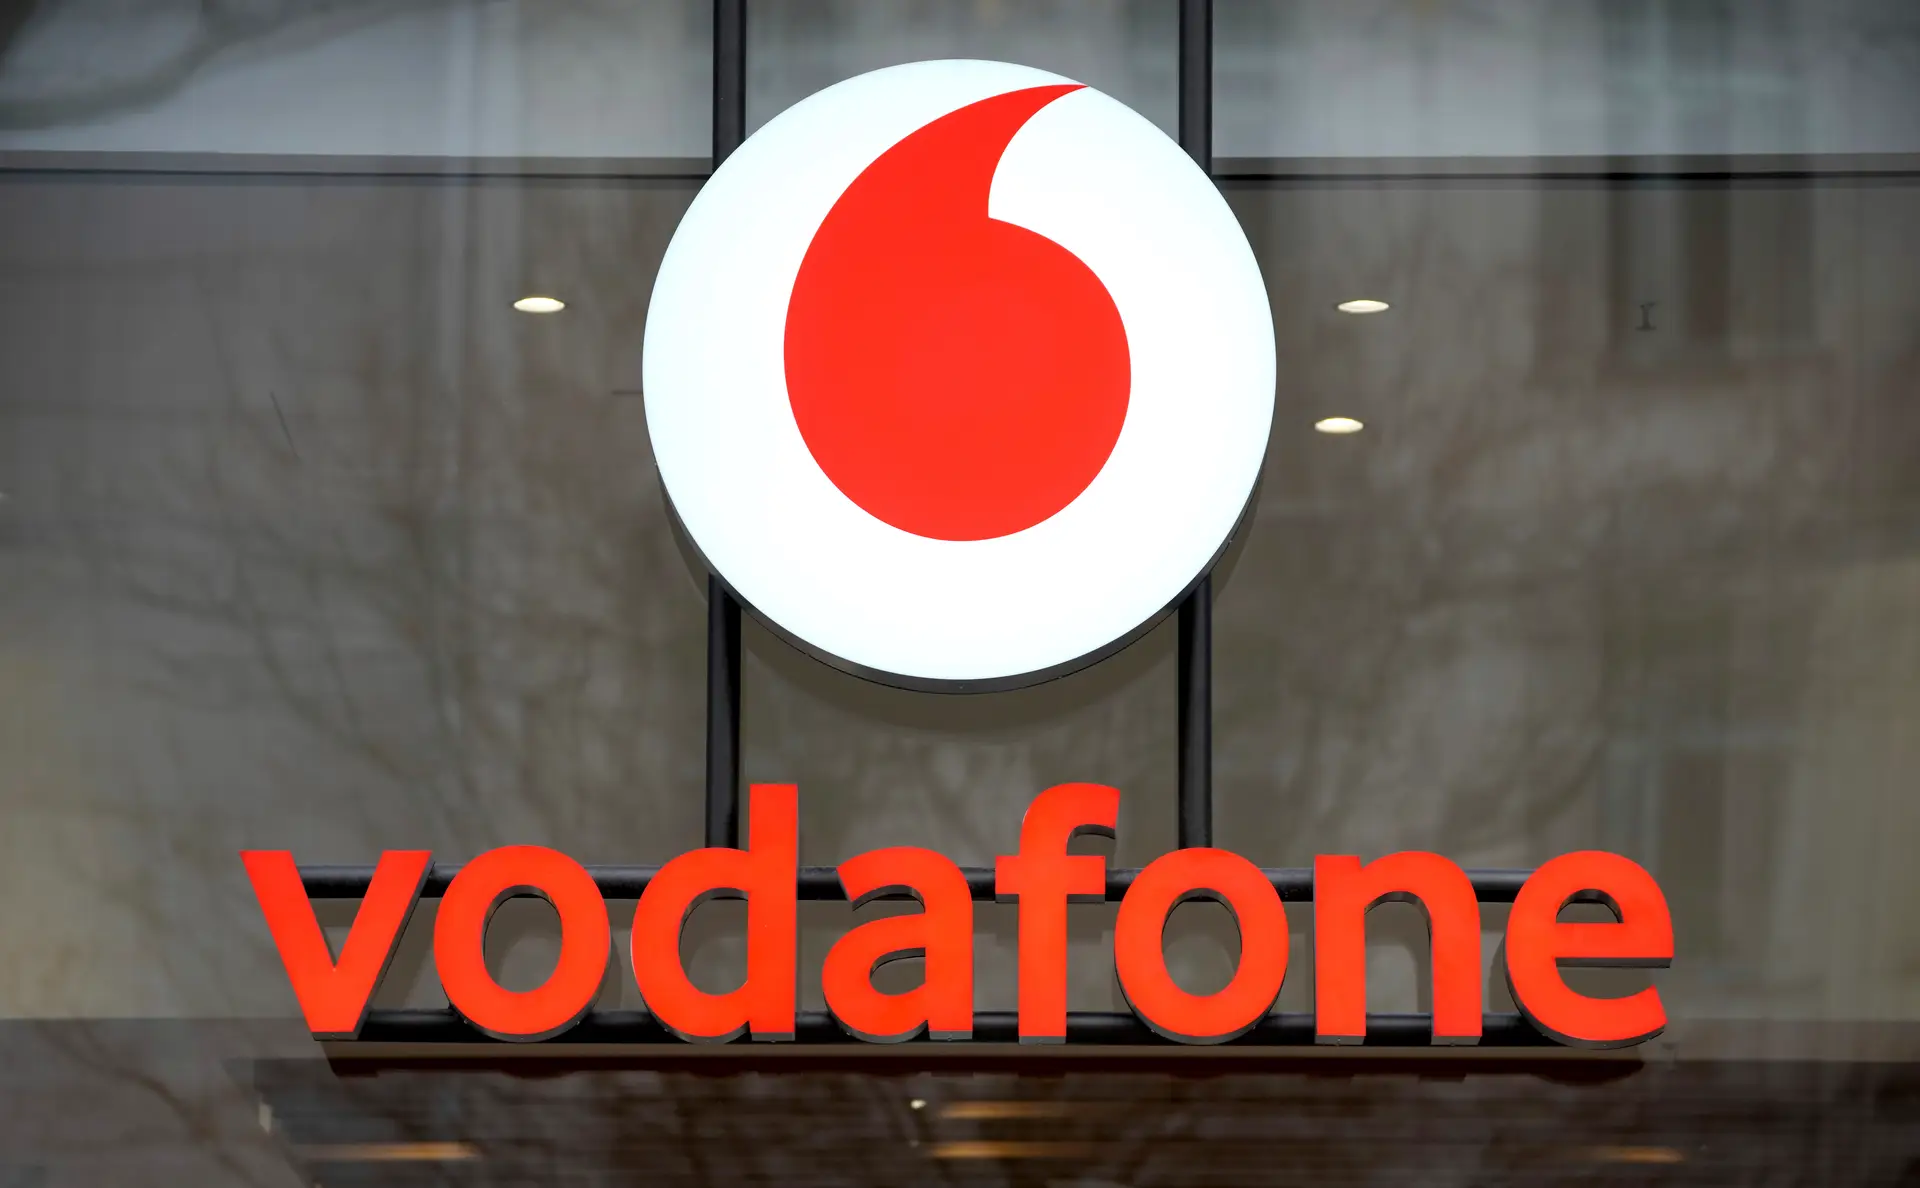 Vodafone pede desculpa aos clientes após ter sido alvo de “ato terrorista e criminoso”